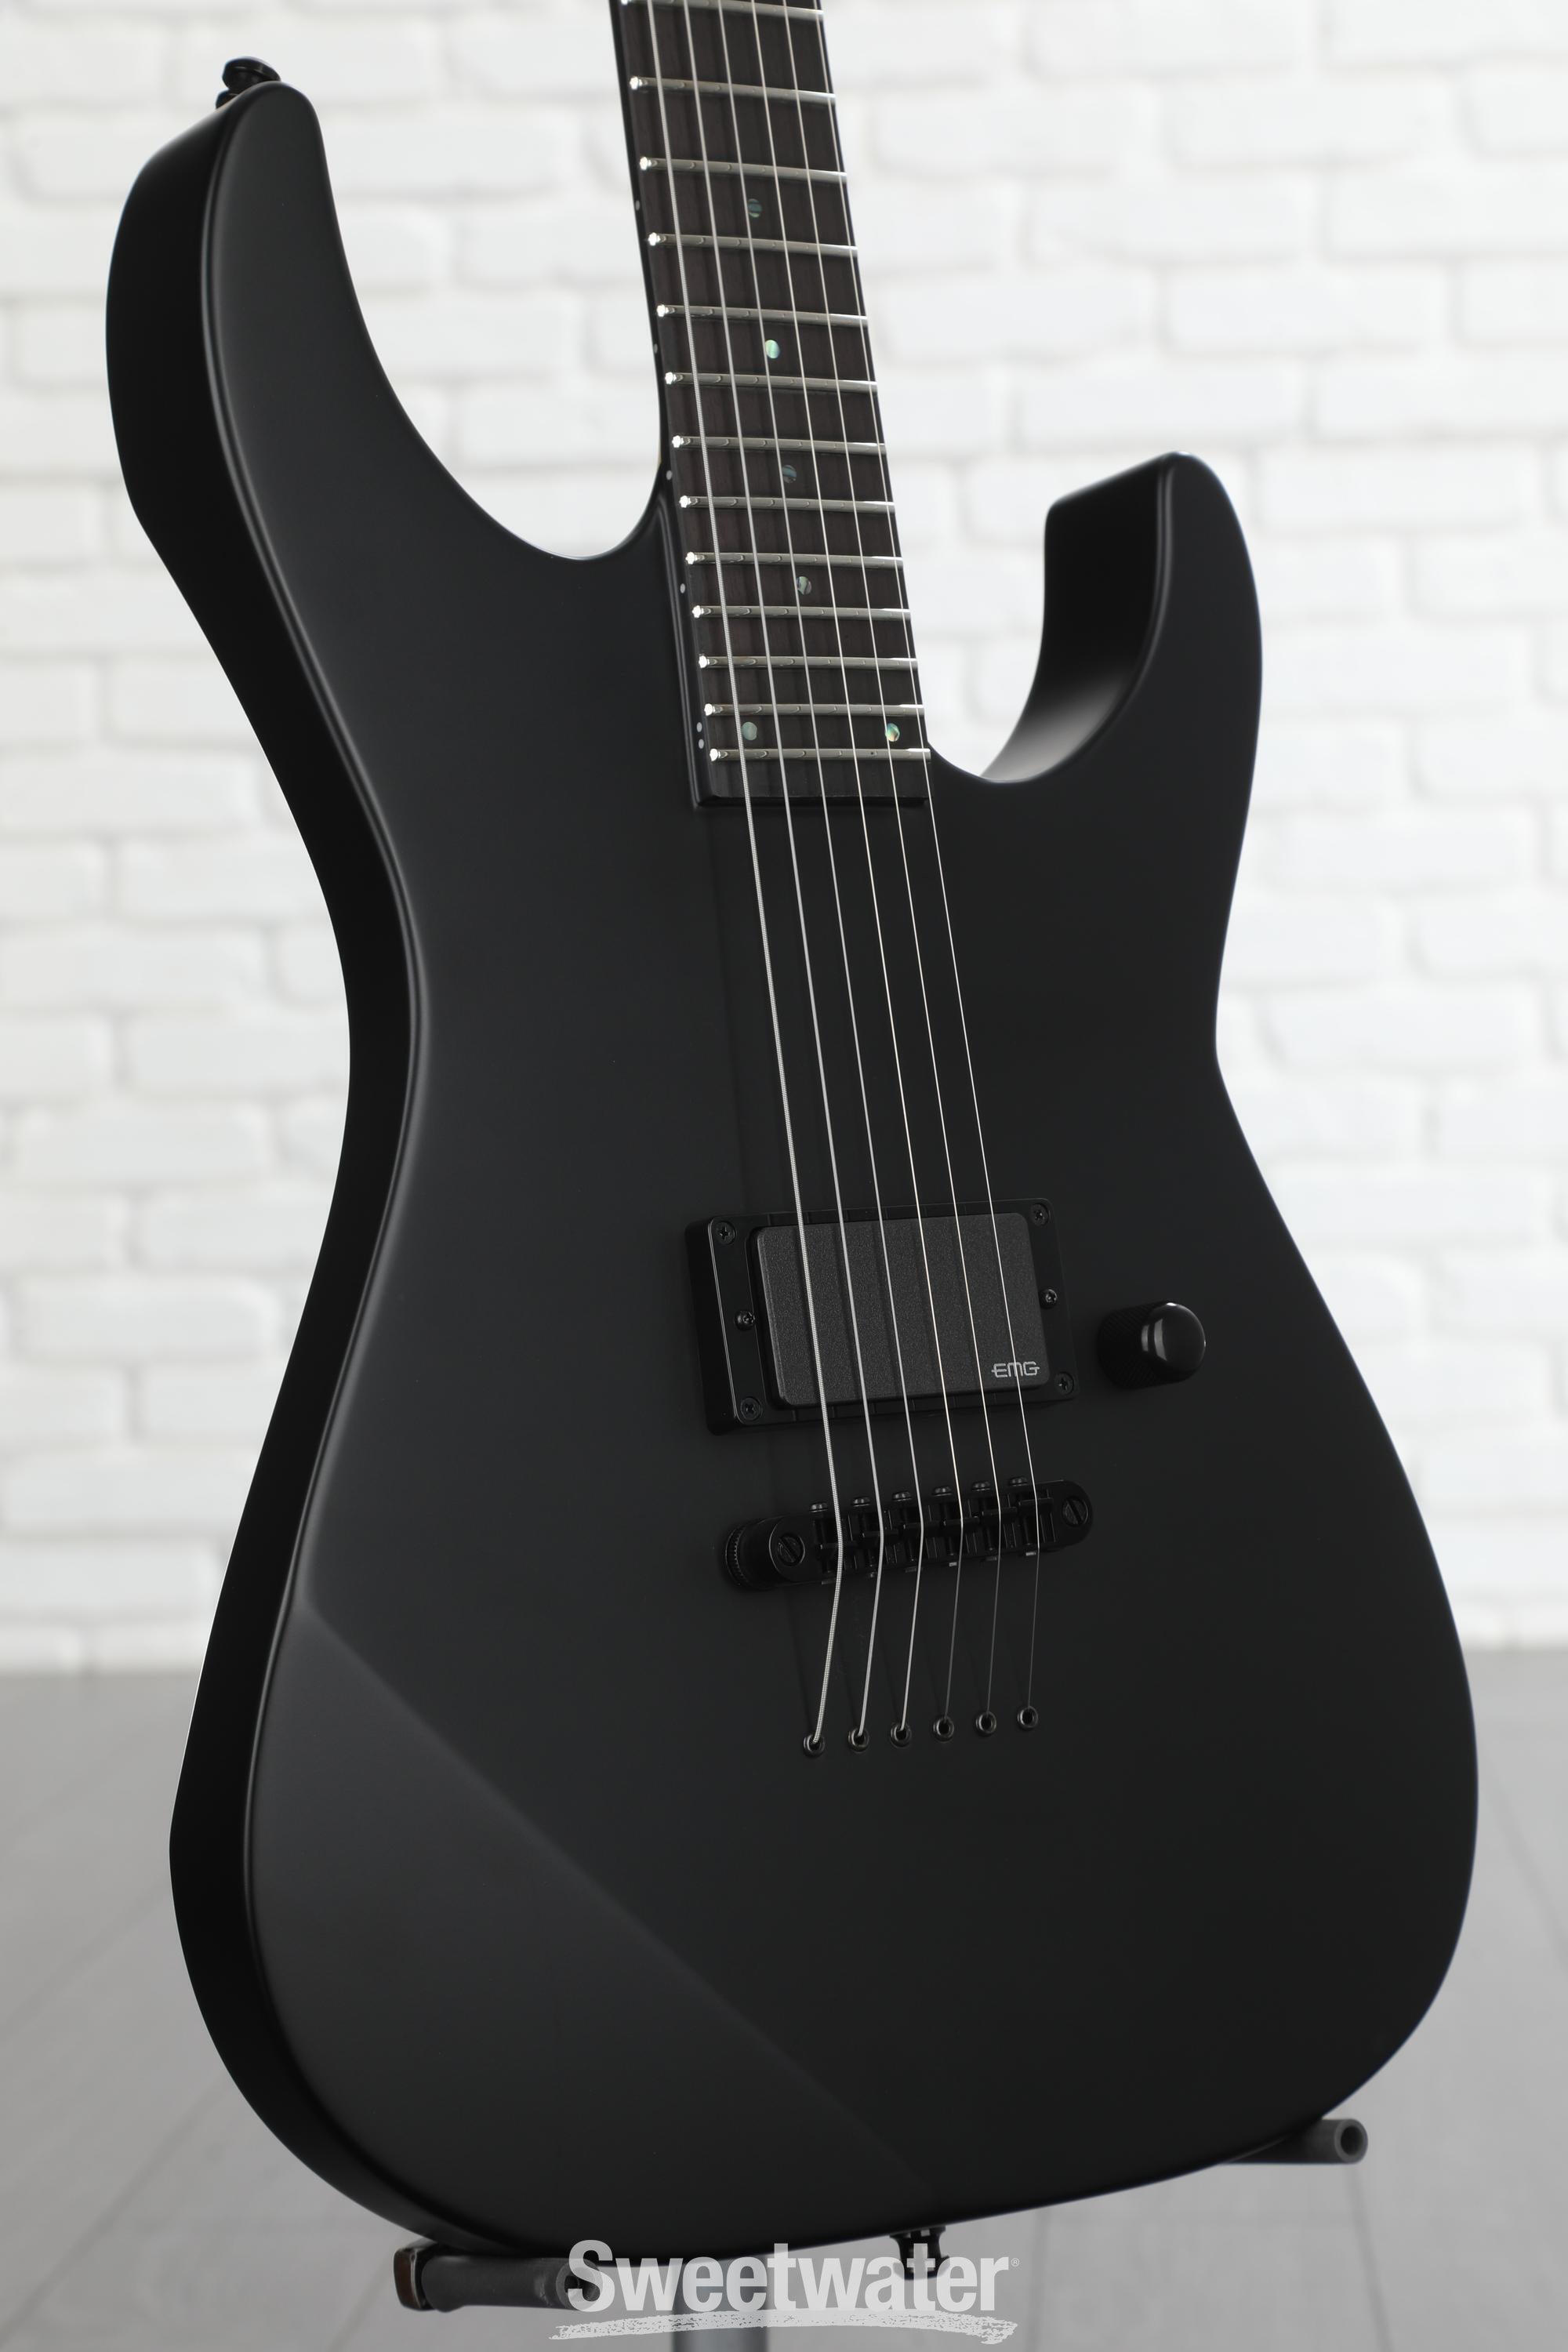 ESP E-II MI Thru NT Electric Guitar - Black Satin